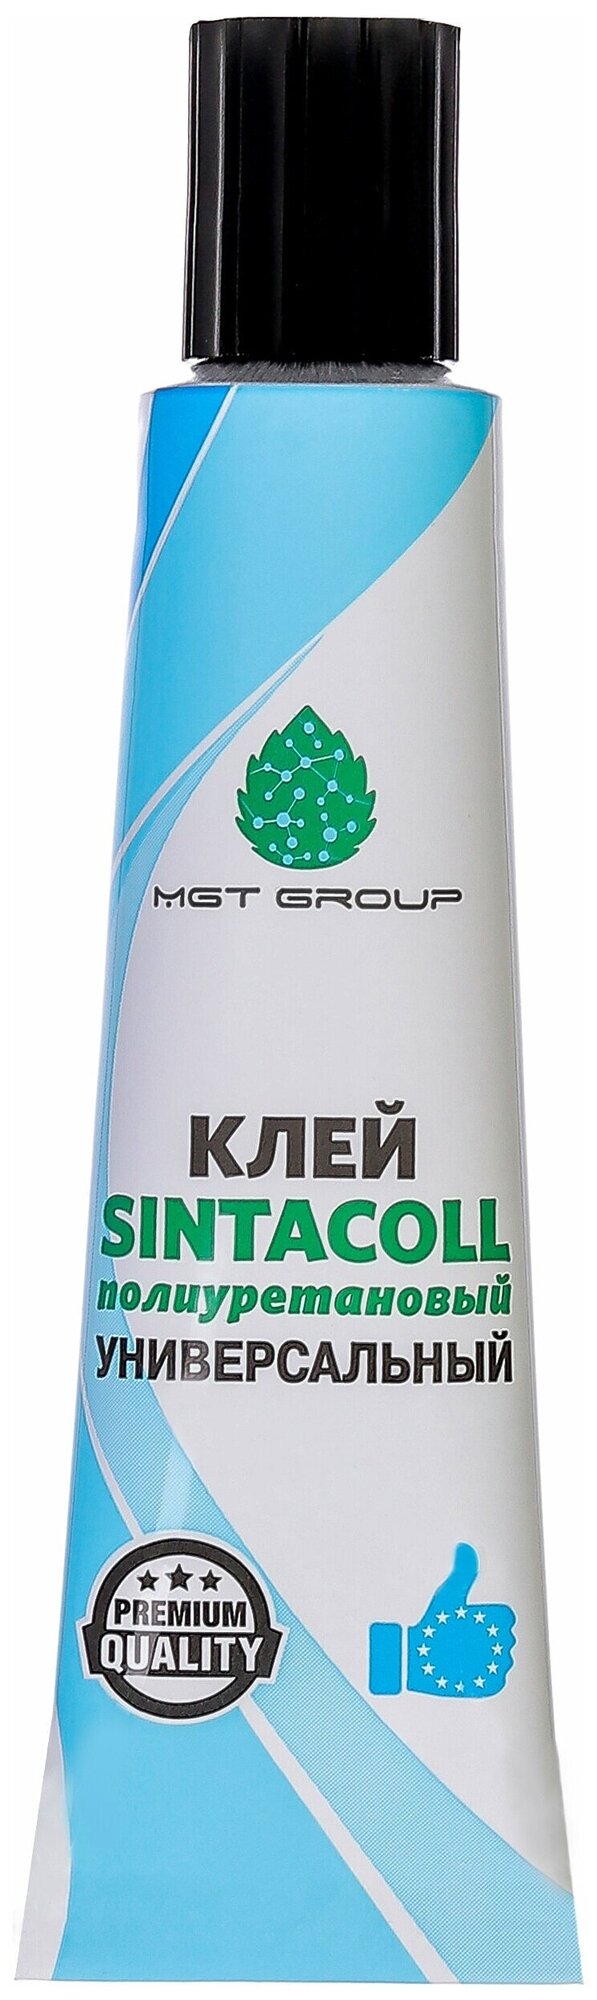 Полимерный MGT Group Sintacoll полиуретановый